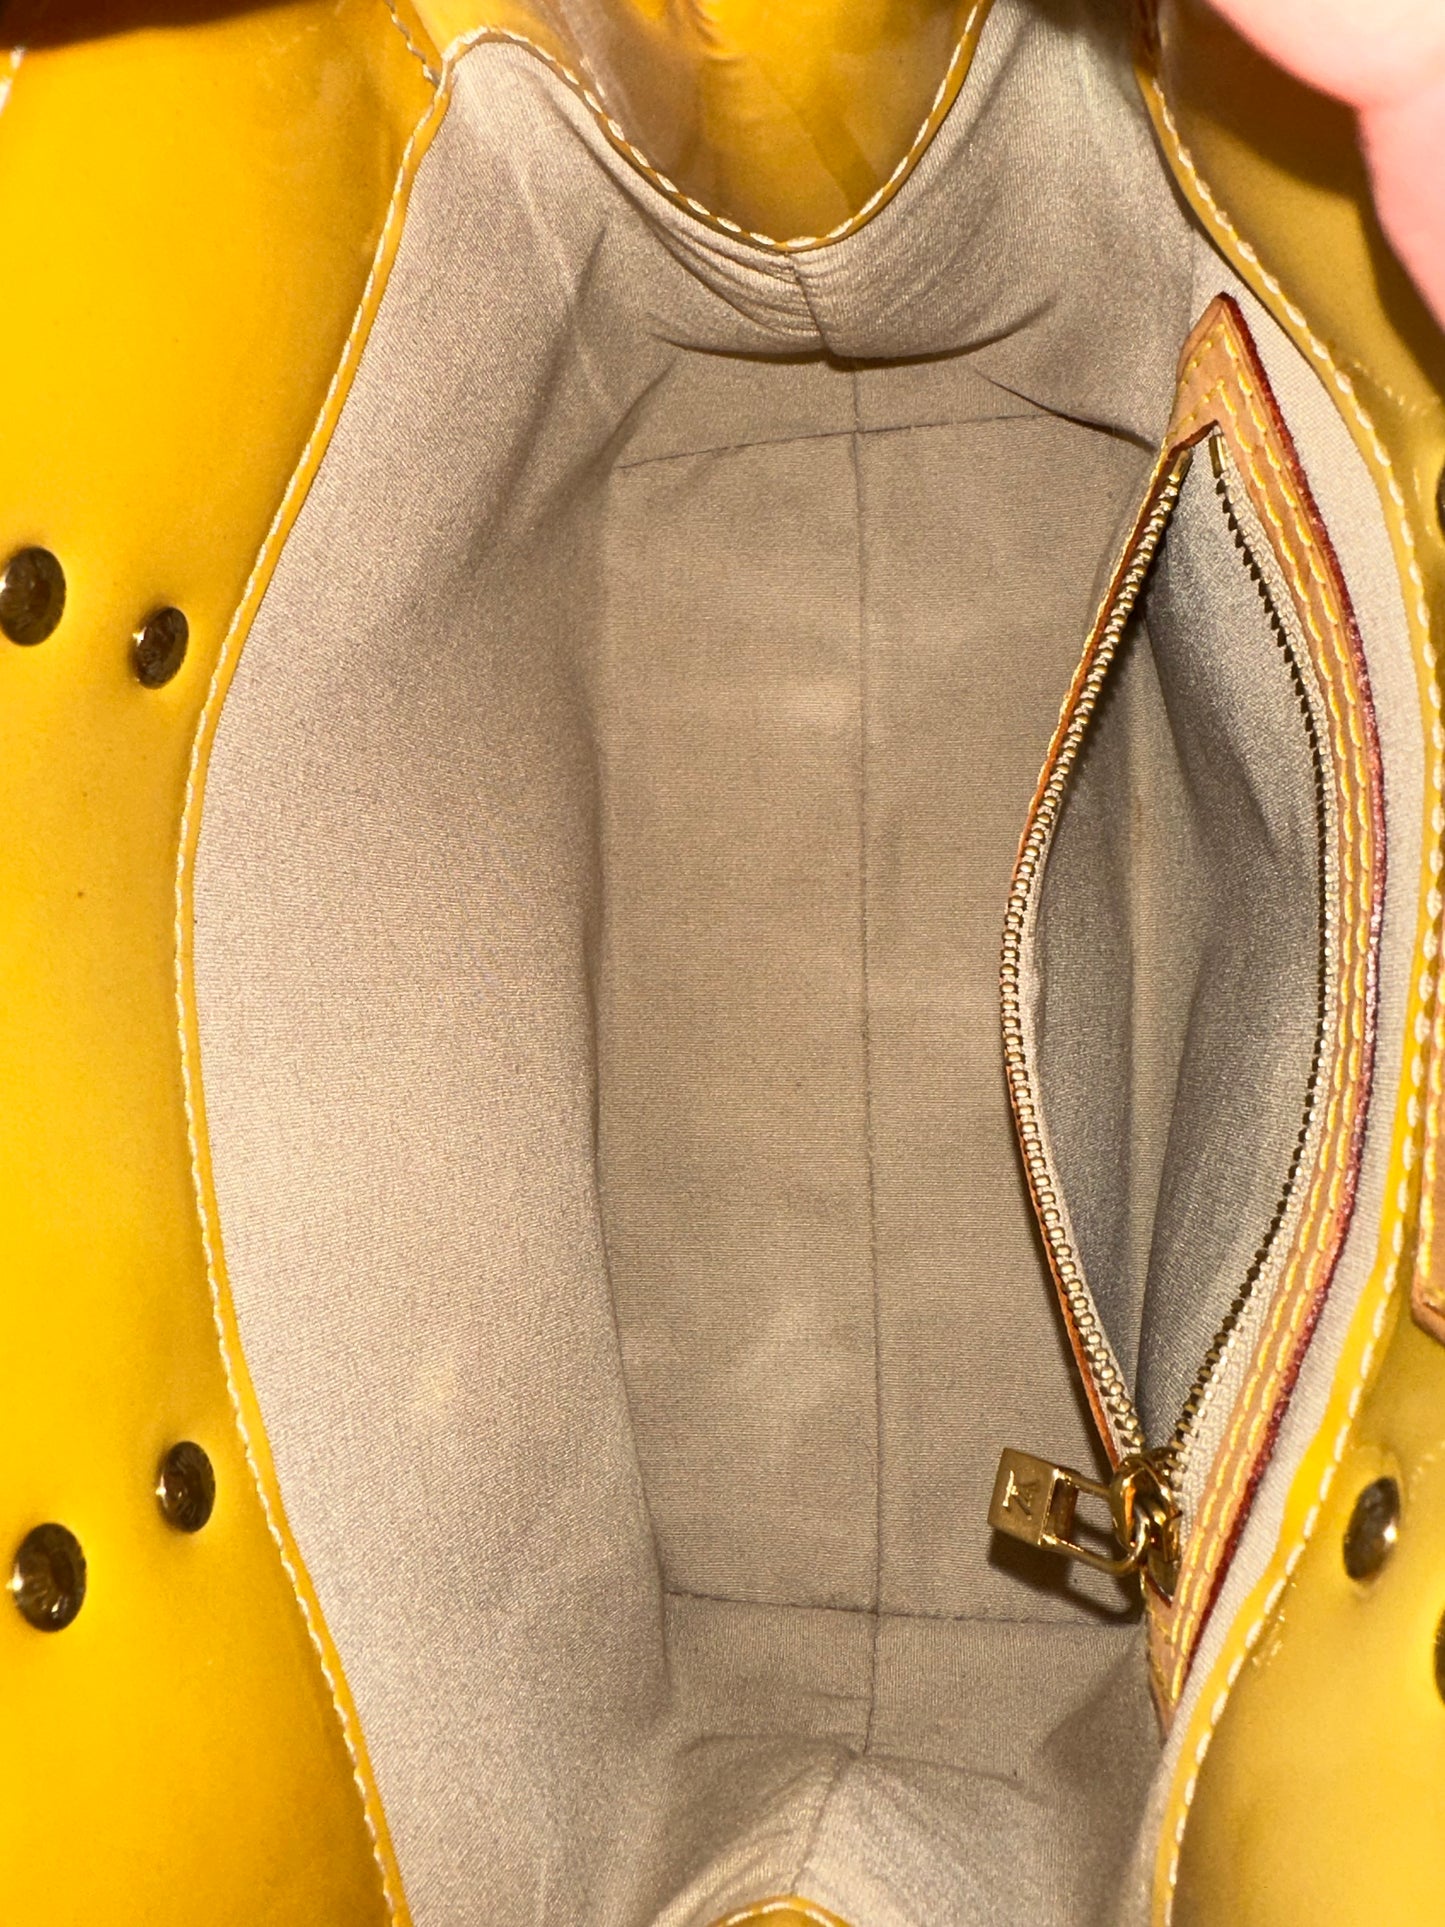 Pre-owned Authentic Louis Vuitton Reade PM Vernis Handbag